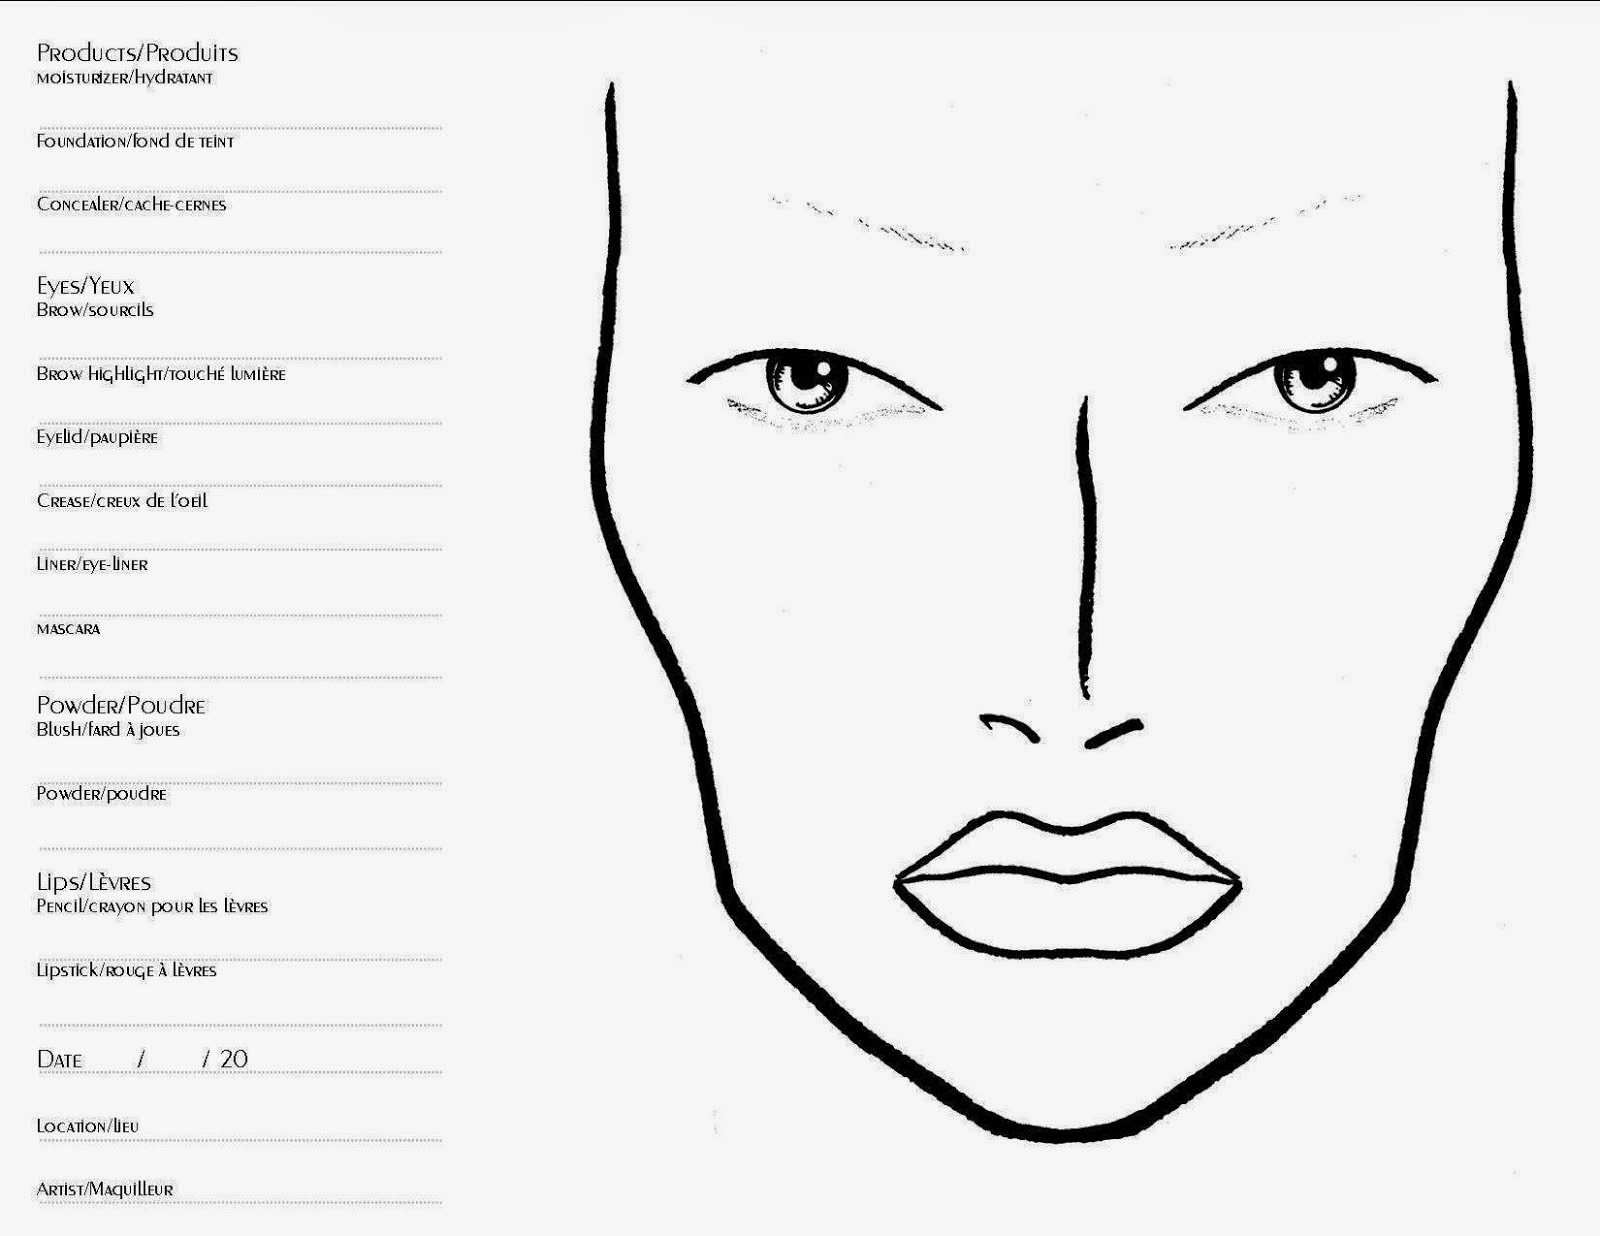 Makeup Face Chart